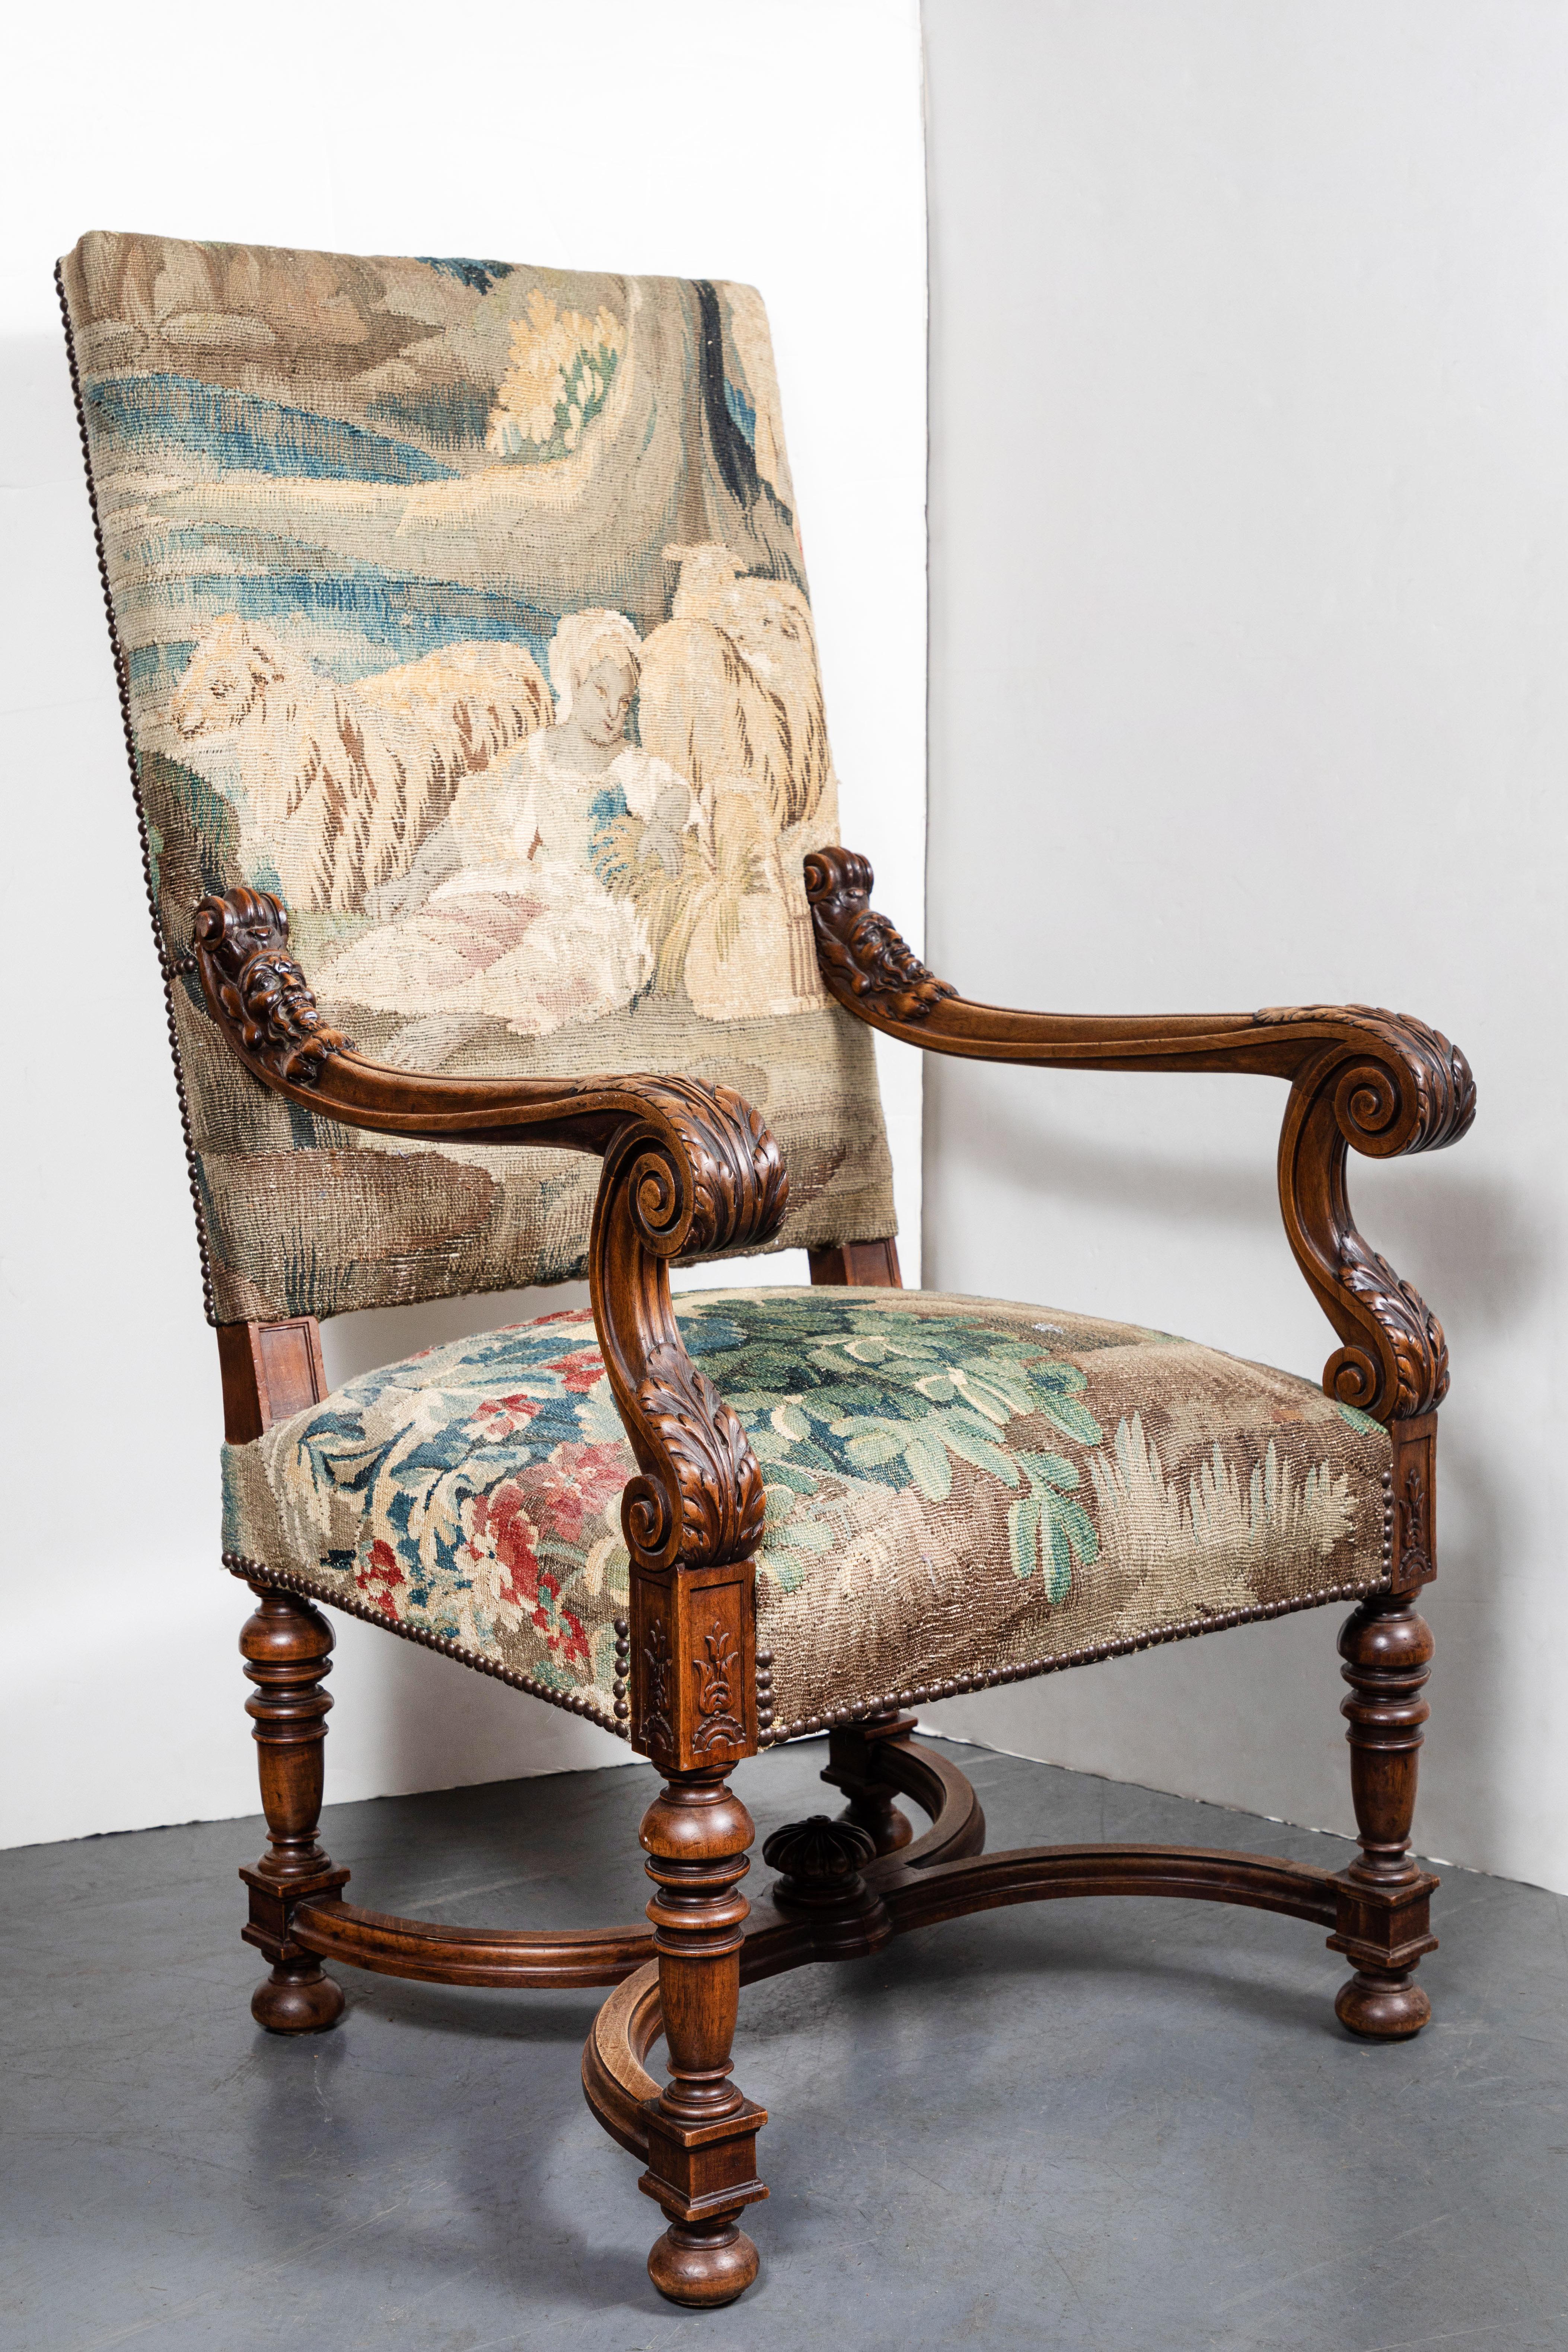 Elegant fauteuil français sculpté, vers 1850, dont les accoudoirs sont ornés de volutes et de feuillages, et dont le brancard est en forme de X. L'ensemble est recouvert d'une tapisserie flamande du XVIIIe siècle, ornée de têtes de clous en bronze.